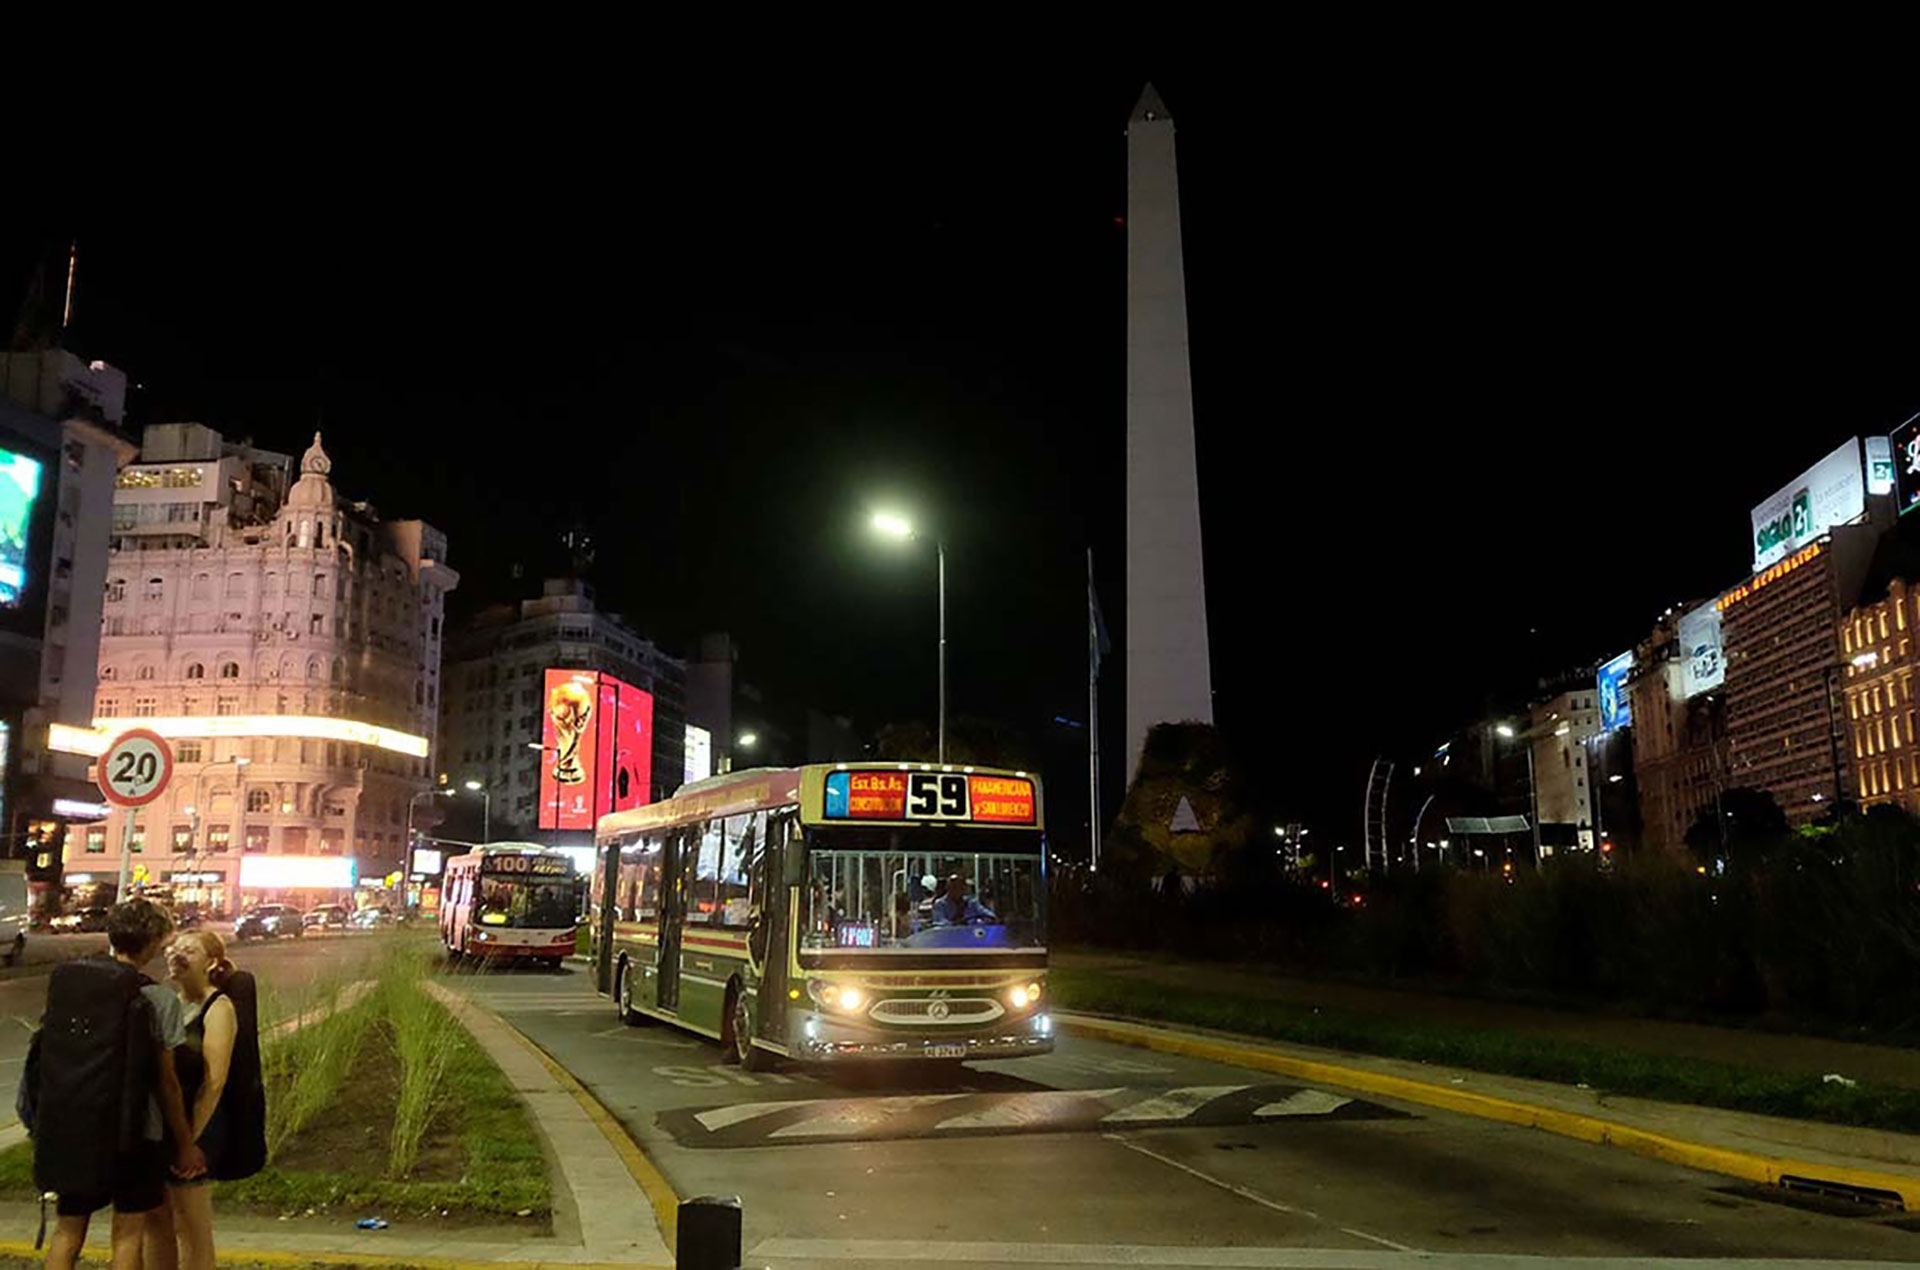 El obelisco en Buenos Aires estuvo también apagado entre las 20:30 y las 21:30
Fotos: Jorge Bosch/GCBA